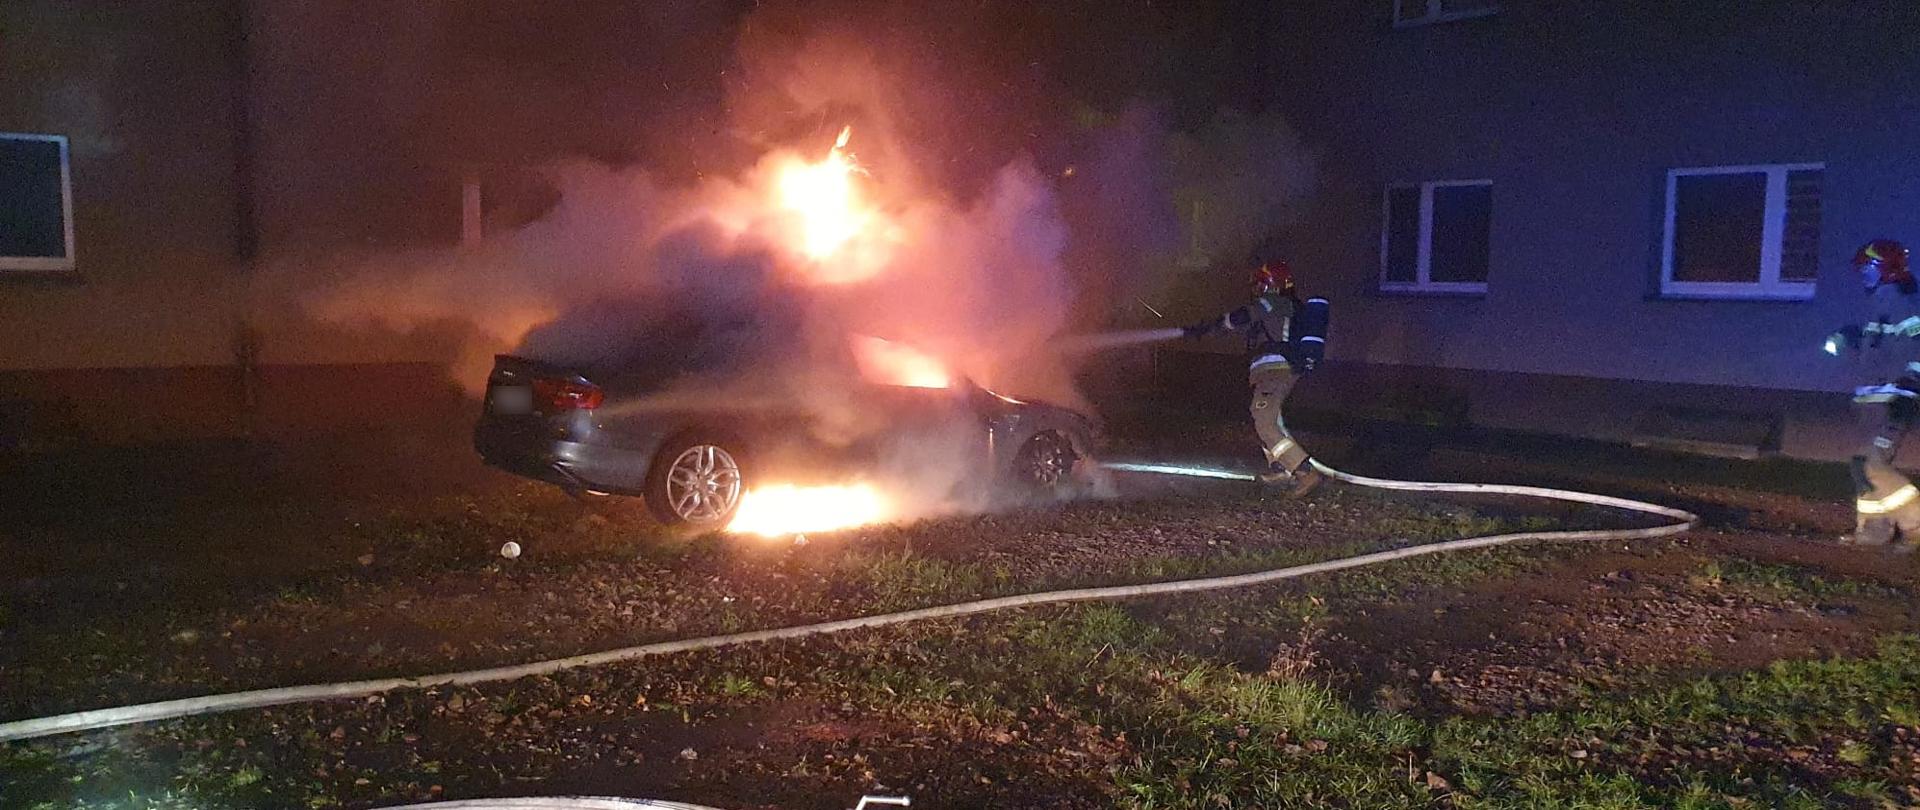 Strażak gasi palący się samochód osobowy poprzez podanie jednego prądu wody.